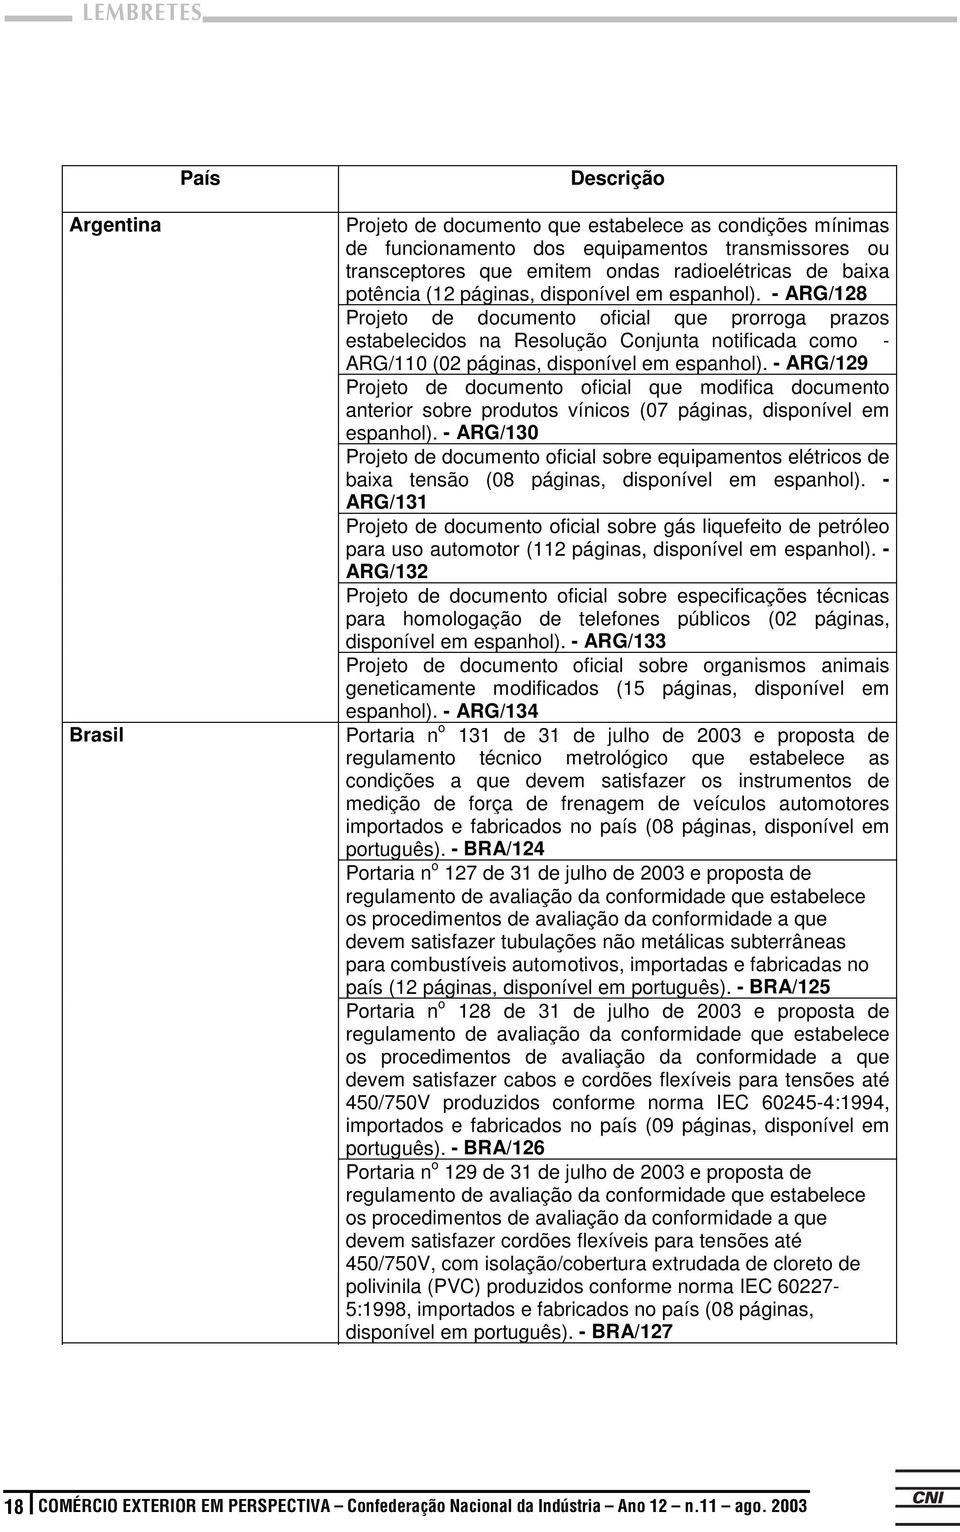 -ARG/128 Projeto de documento oficial que prorroga prazos estabelecidos na Resolução Conjunta notificada como - ARG/110 (02 páginas, disponível em espanhol).